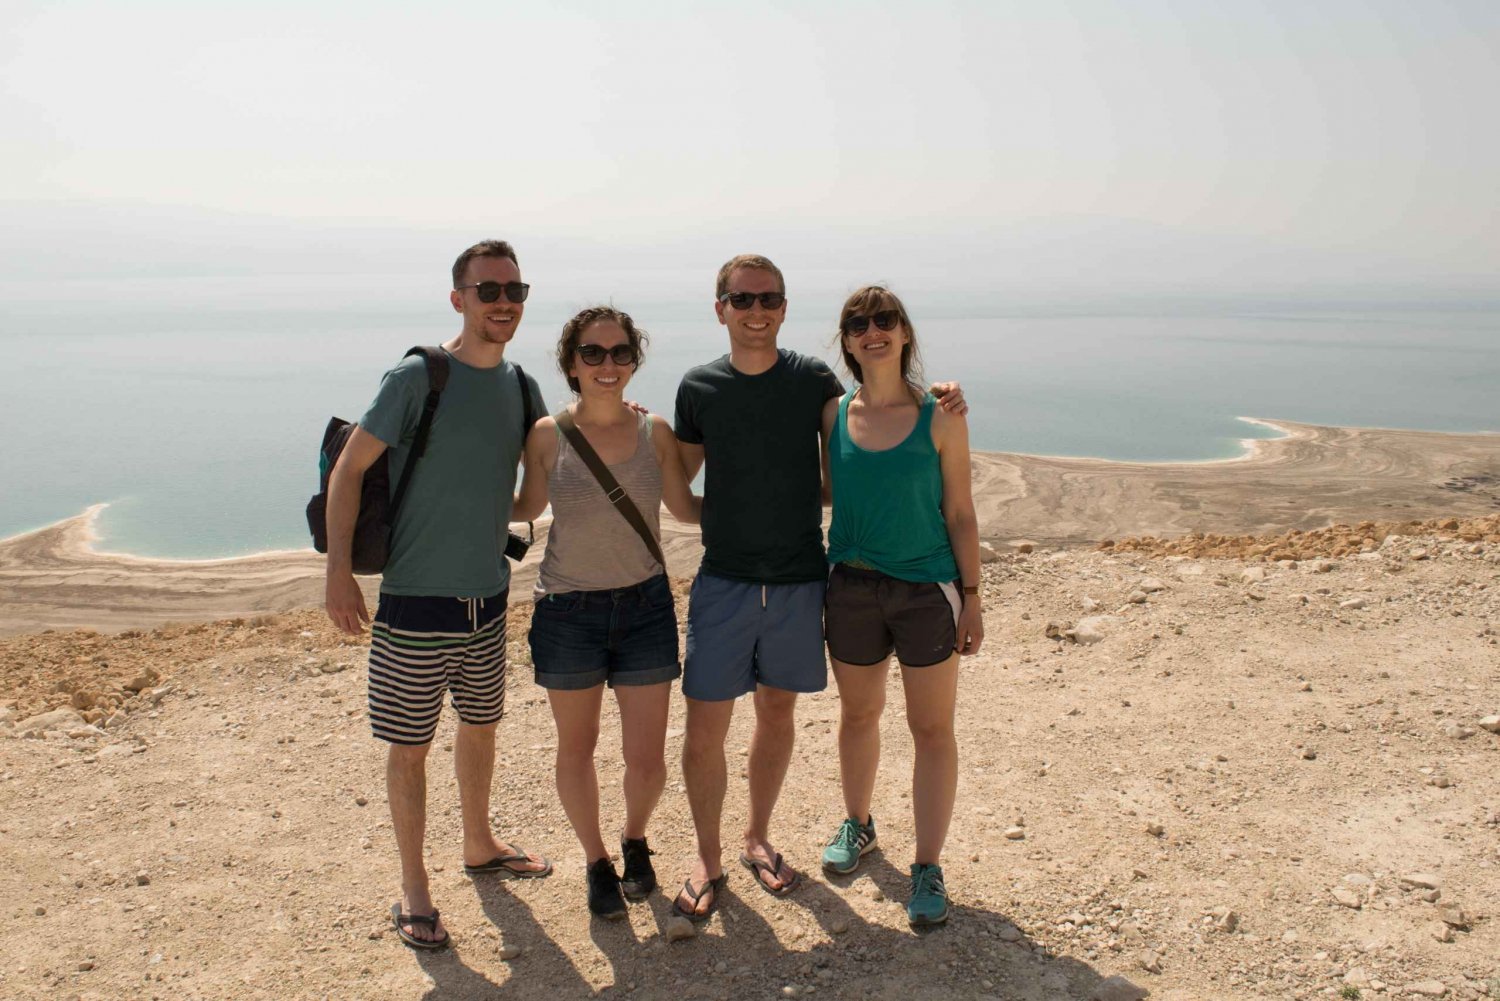 Masada, Ein Gedi, and Dead Sea Day Trip from Tel Aviv